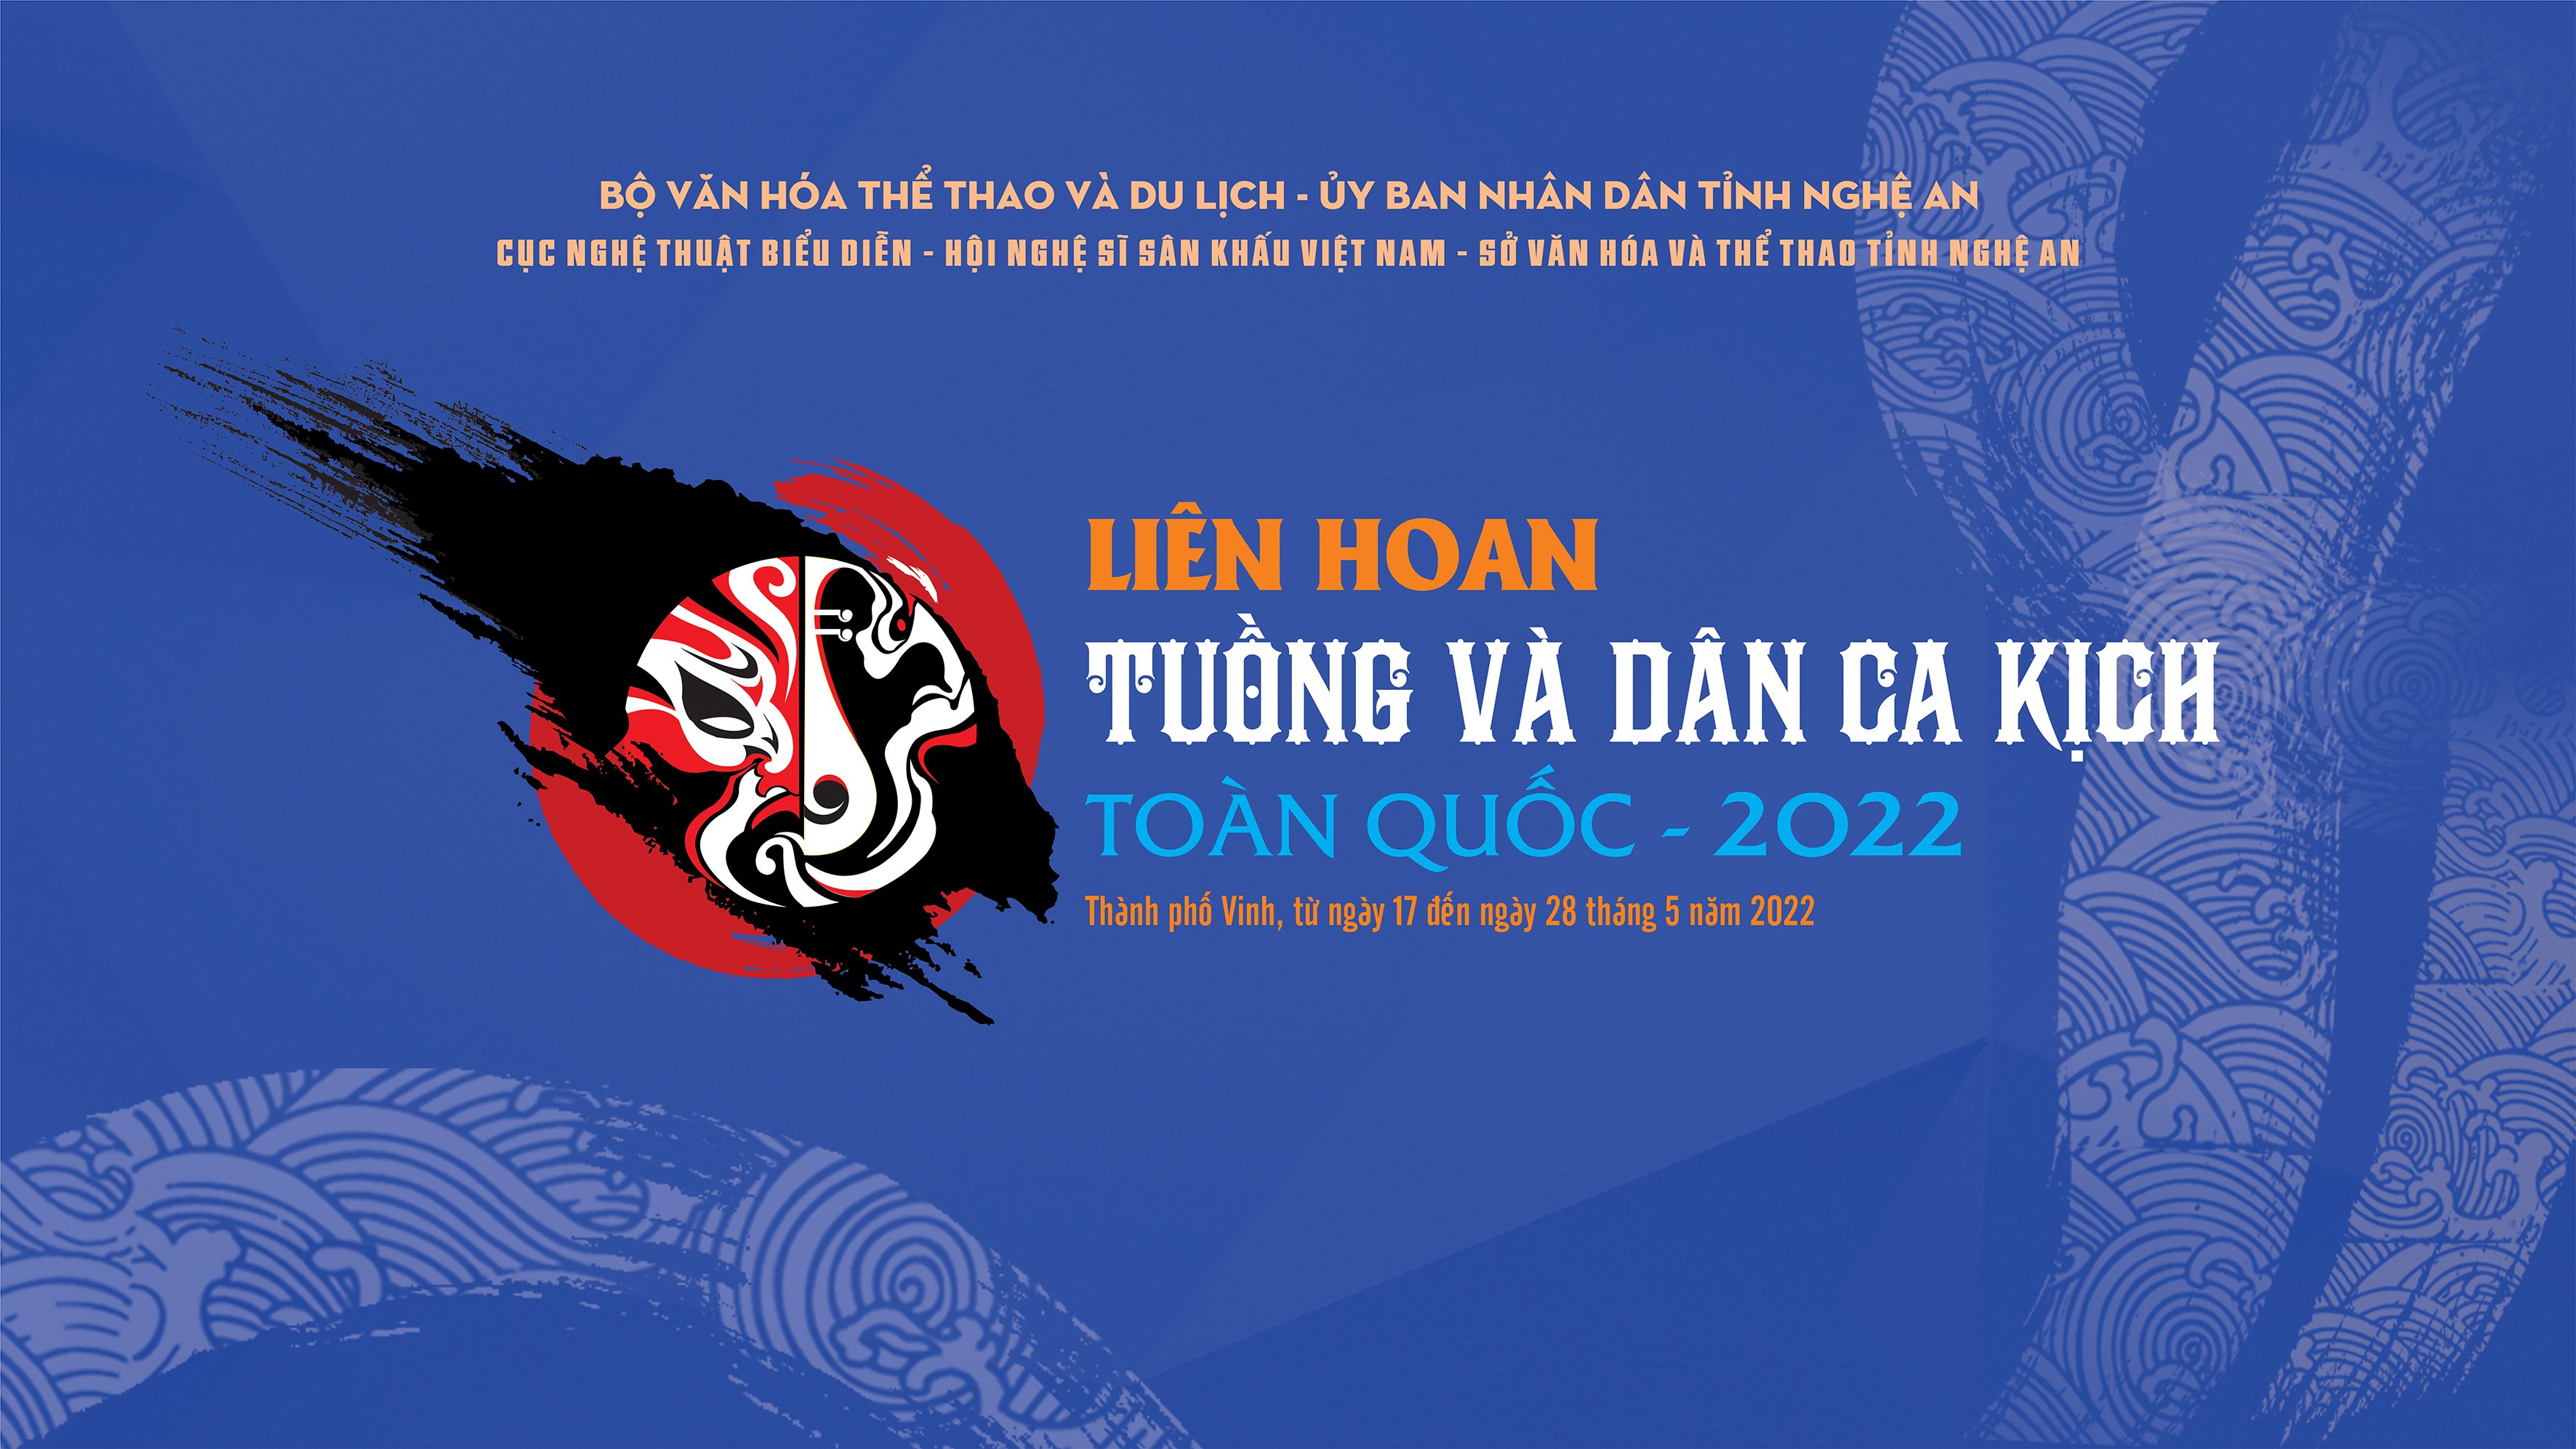 LIÊN HOAN TUỒNG VÀ DÂN CA KỊCH TOÀN QUỐC 2022 - Vua thánh triều Lê - Nhà hát nghệ thuật truyền thống Bình Định